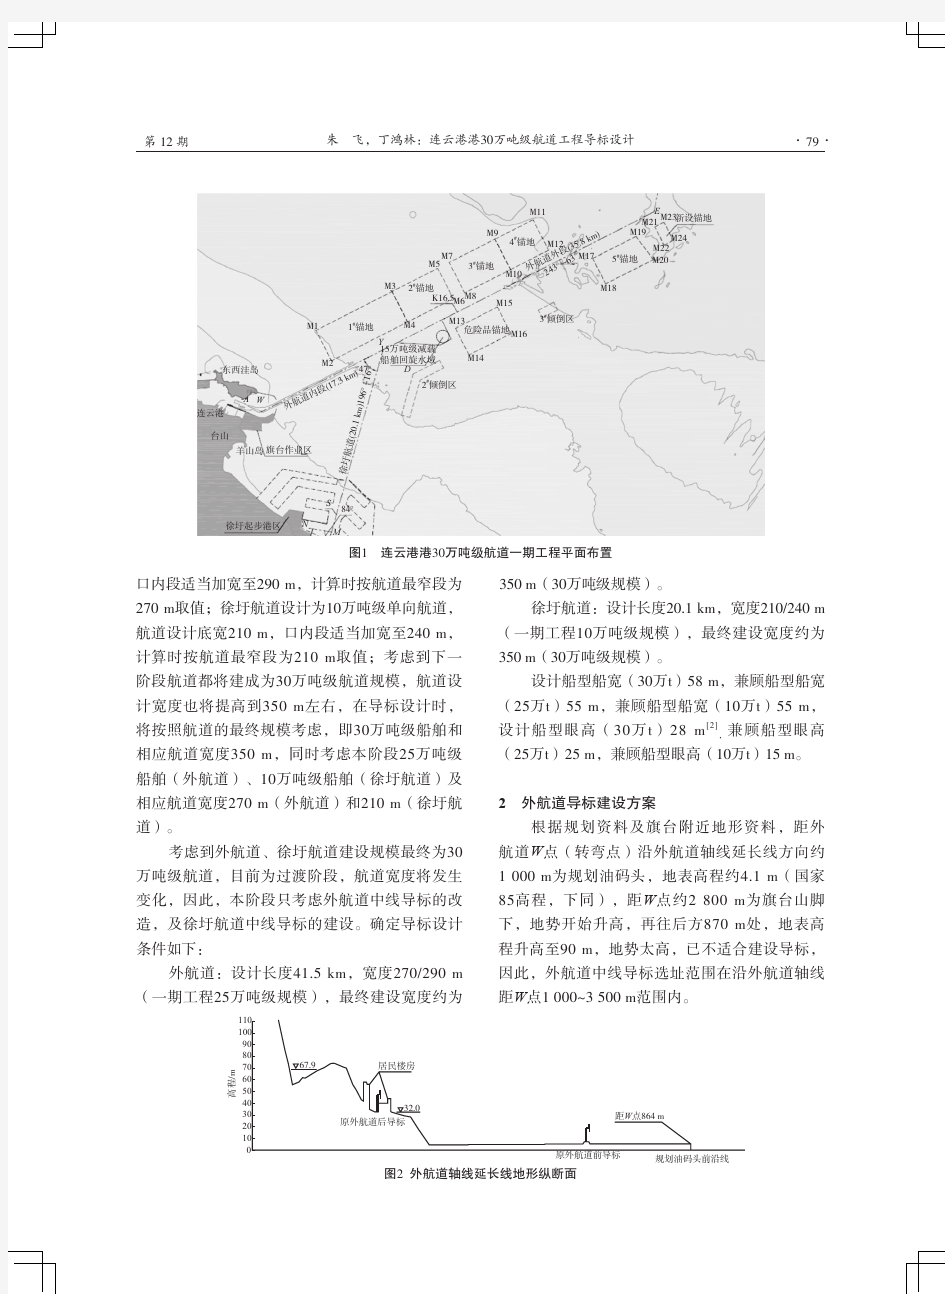 连云港港30万吨级航道工程导标设计